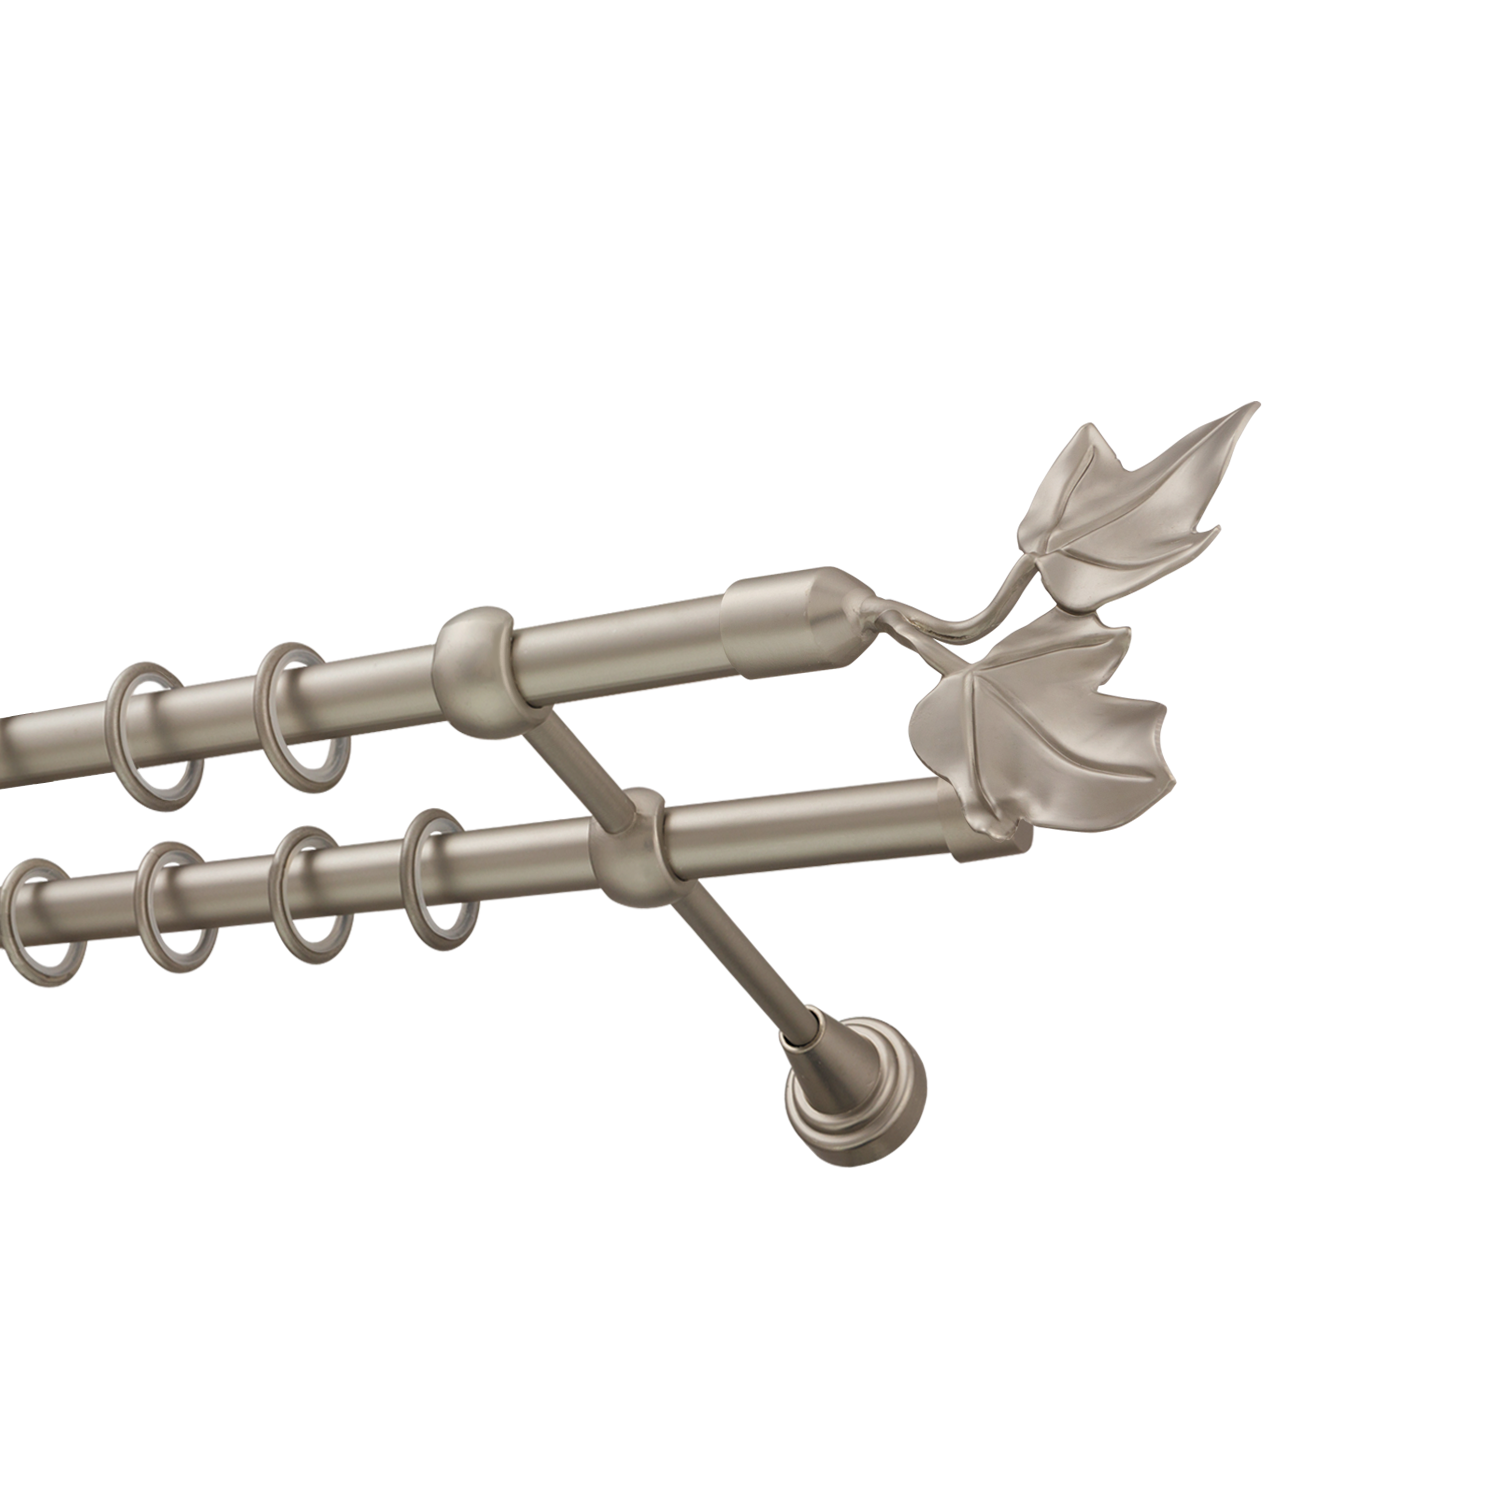 Металлический карниз для штор Листья, двухрядный 16/16 мм, сталь, гладкая штанга, длина 160 см - фото Wikidecor.ru